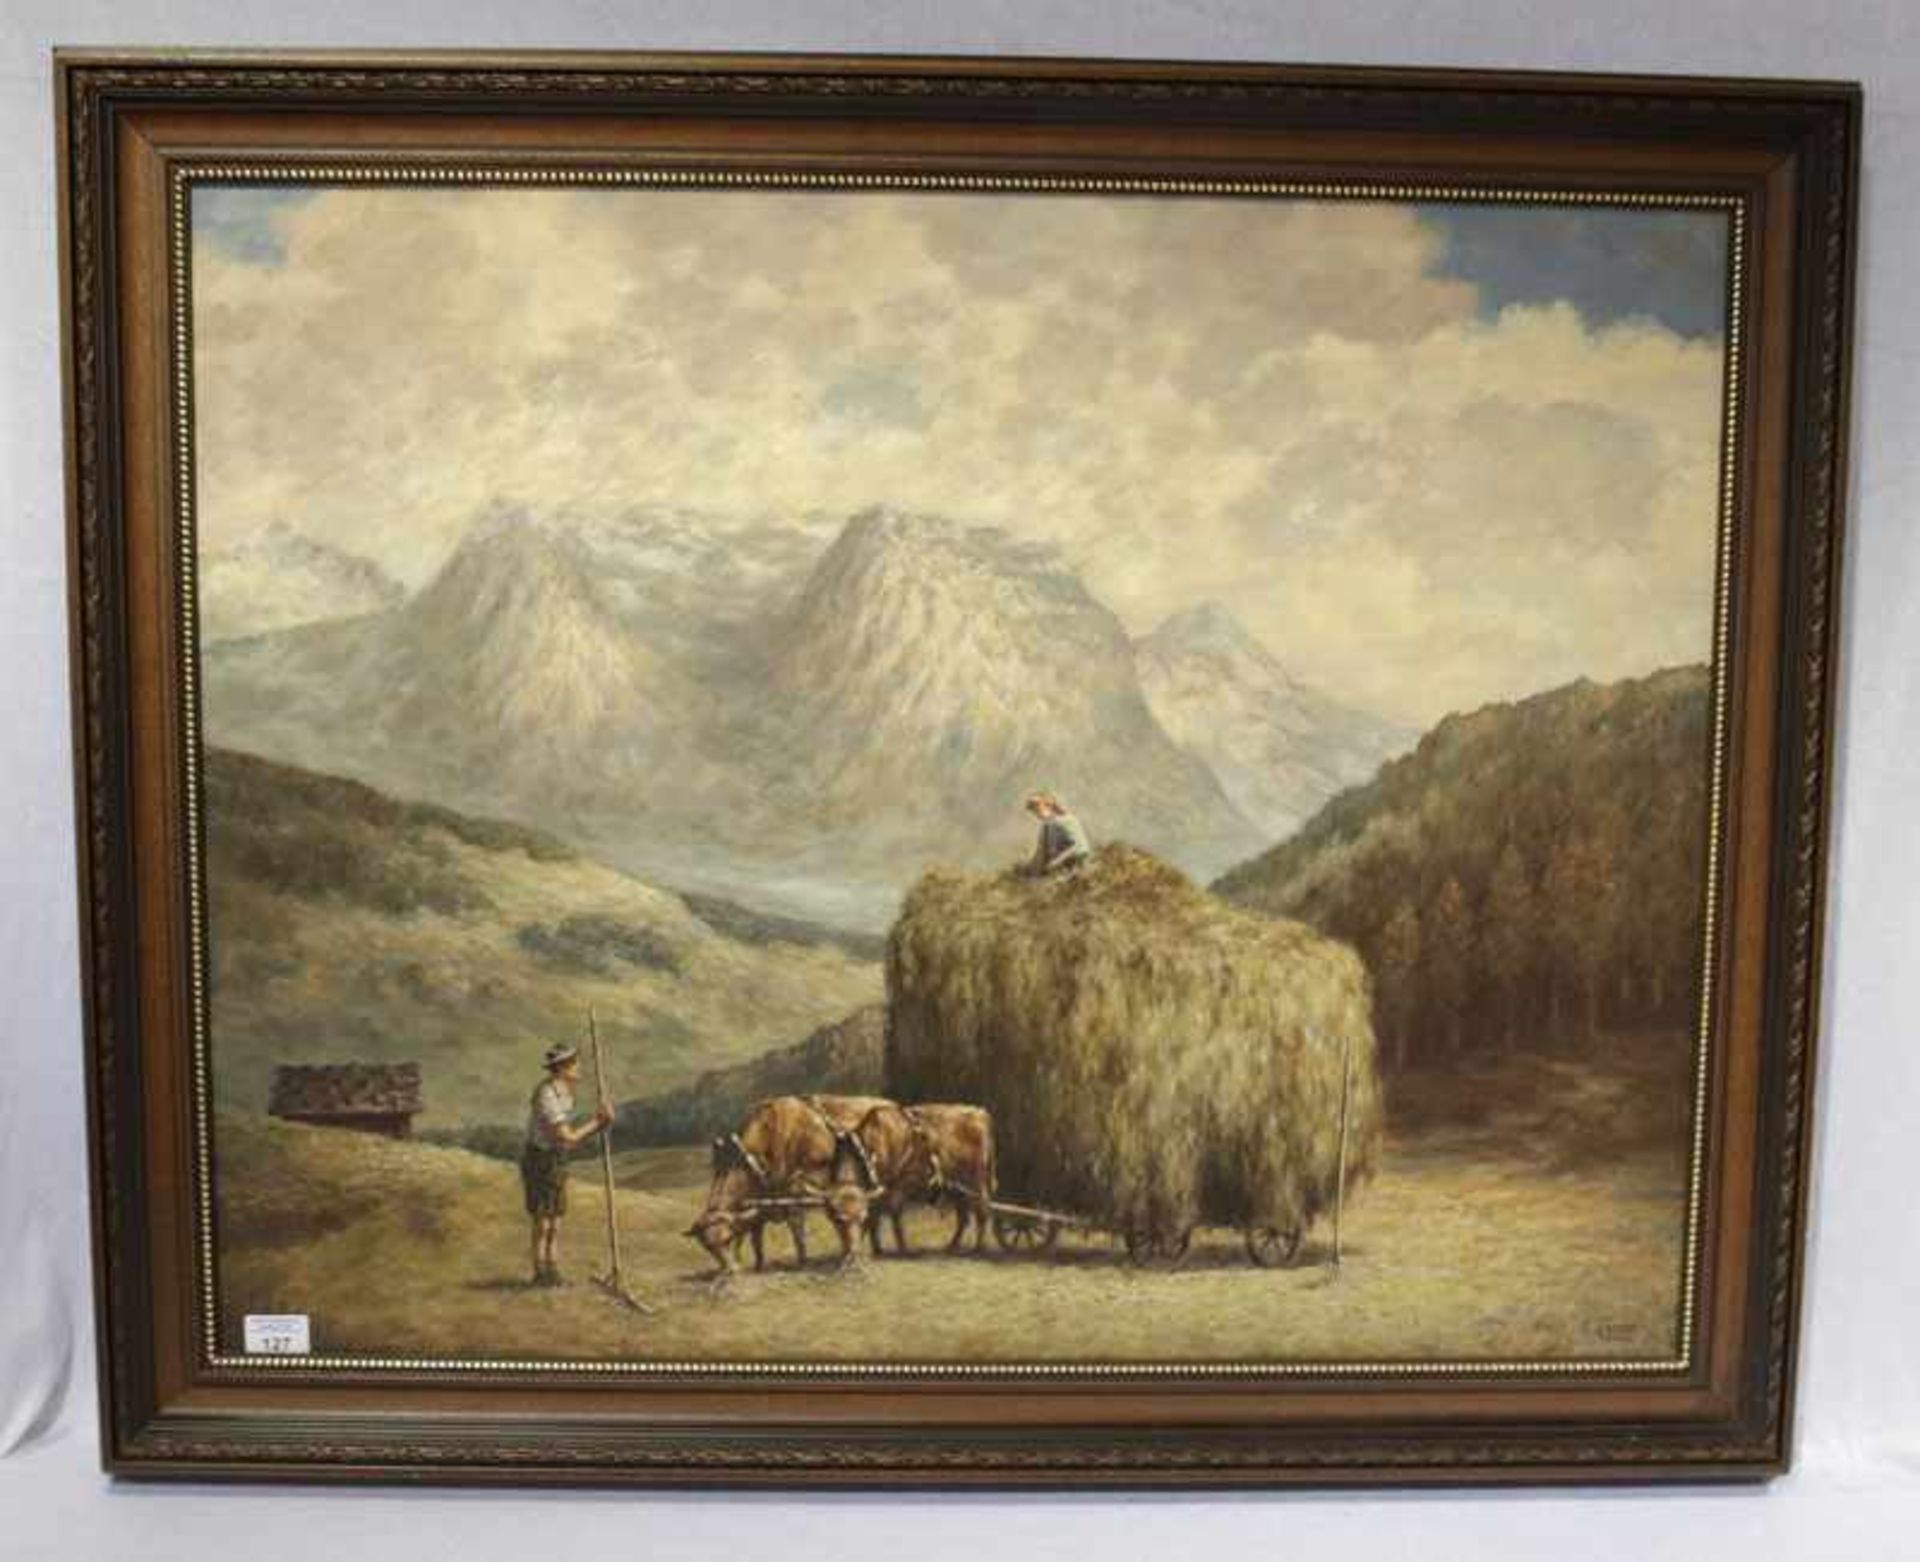 Gemälde ÖL/LW 'Heuernte im Hochgebirge mit Ochsenfuhrwerk', signiert K. Rippe, gerahmt, Rahmen